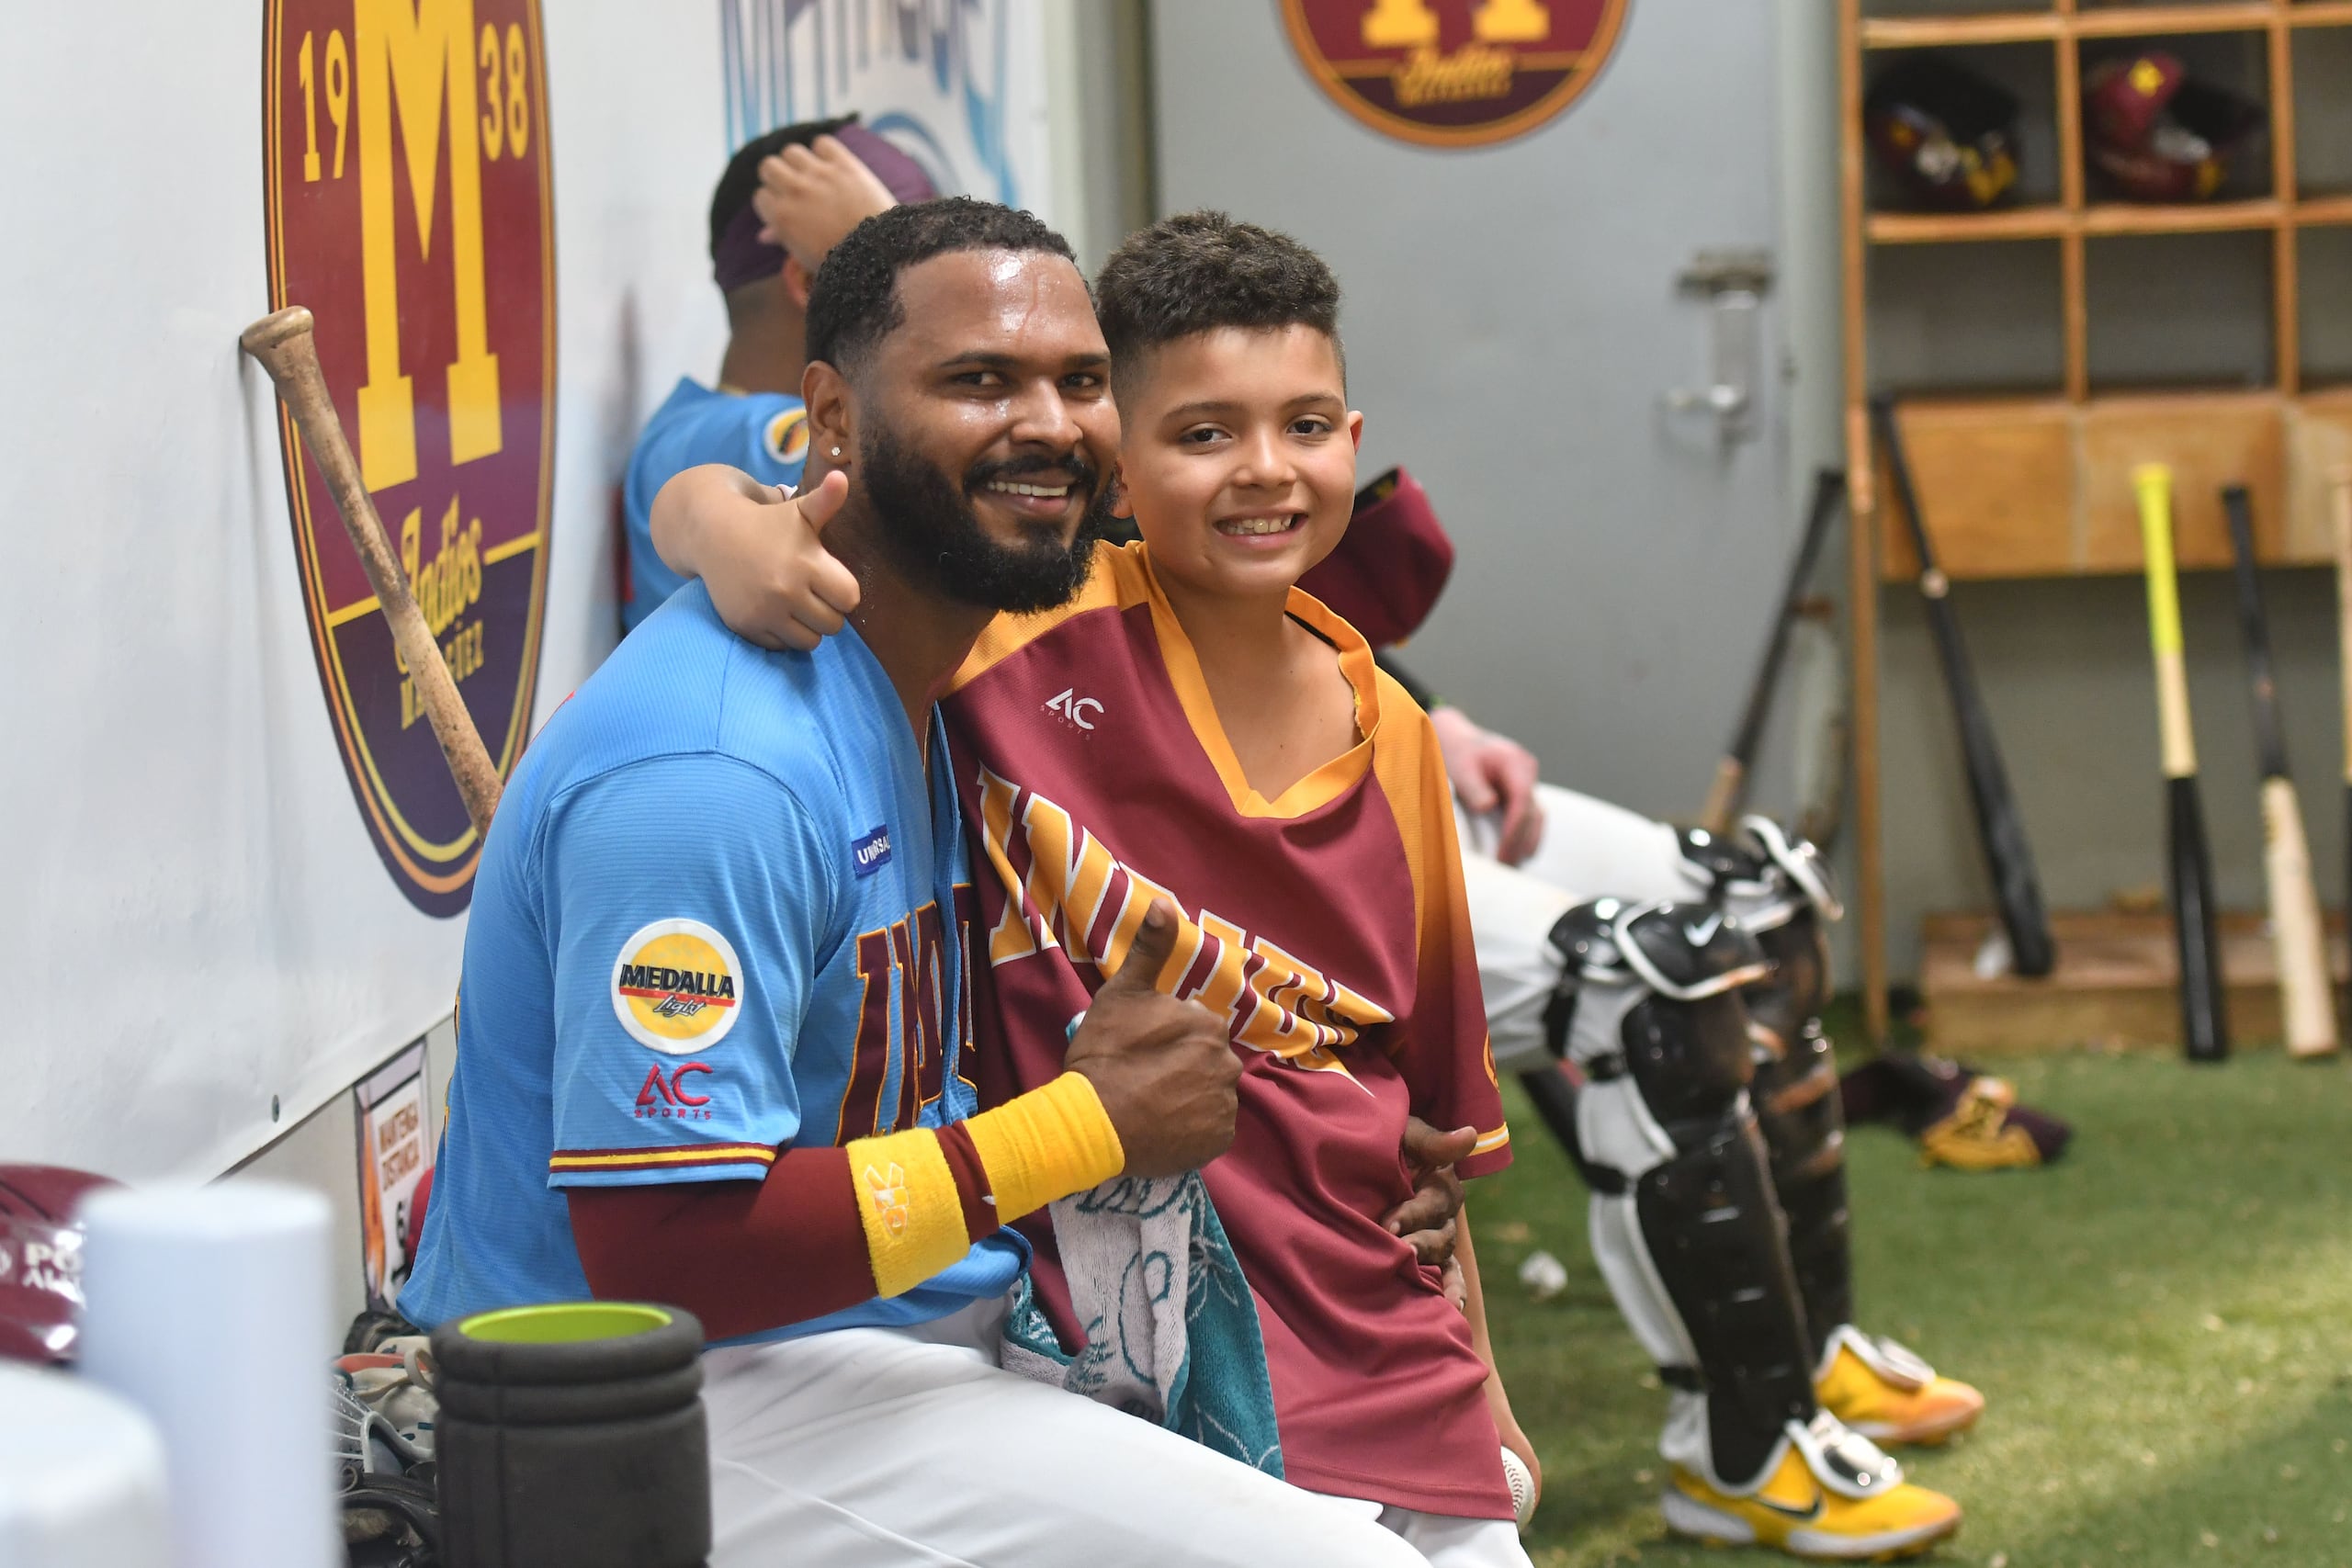 Anthony García comparte con su hijo Romeo luego del partido del lunes en el camerio de los Indios en el 'Cholo' García. Romeo tiene 10 años y comenzó recién a jugar béisbol.